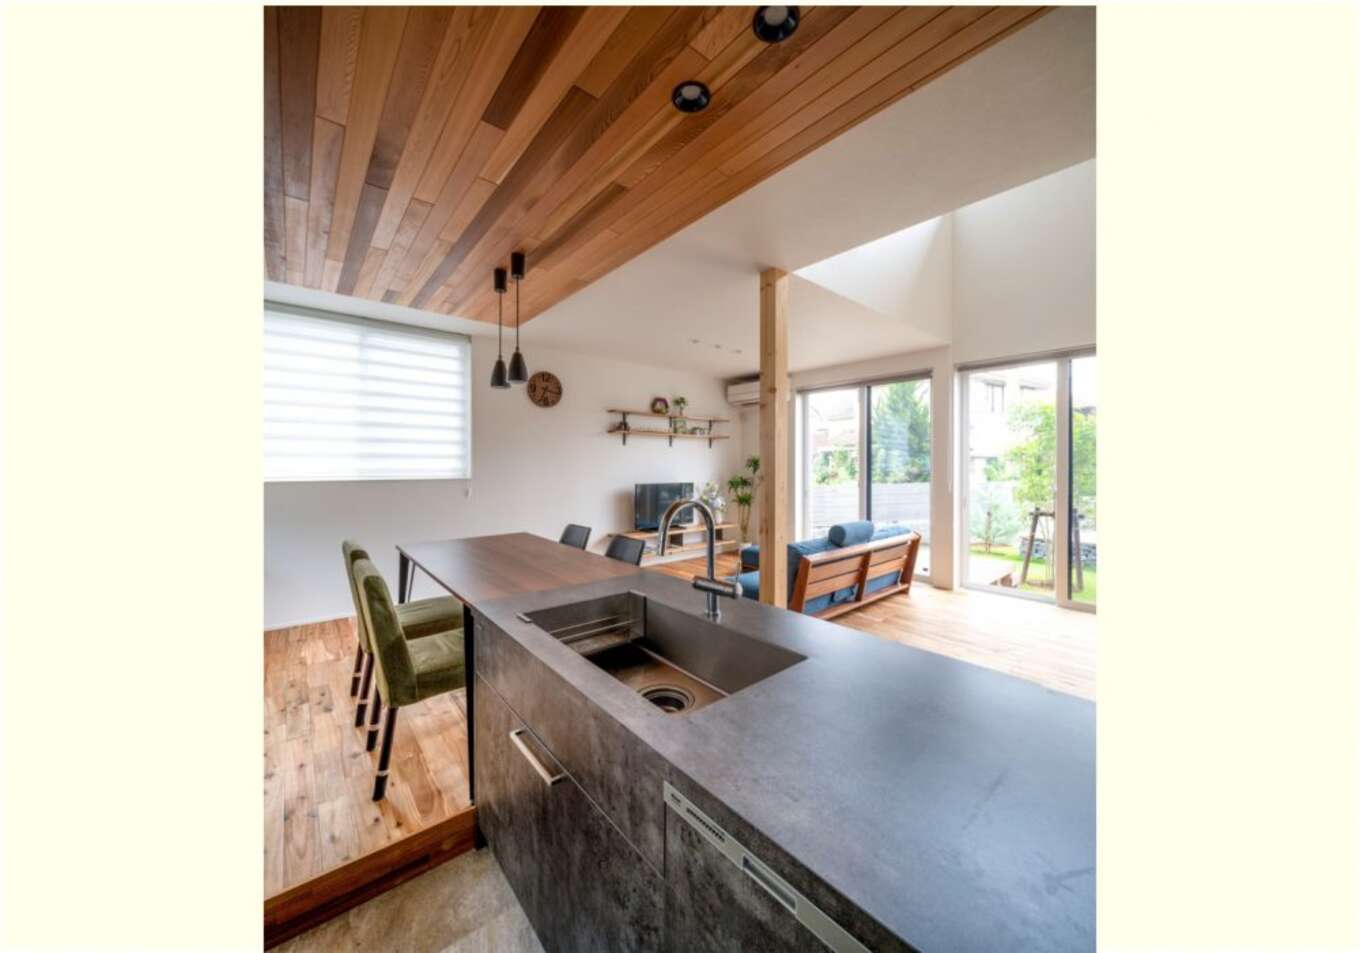 アイランドキッチンと板を貼った天井